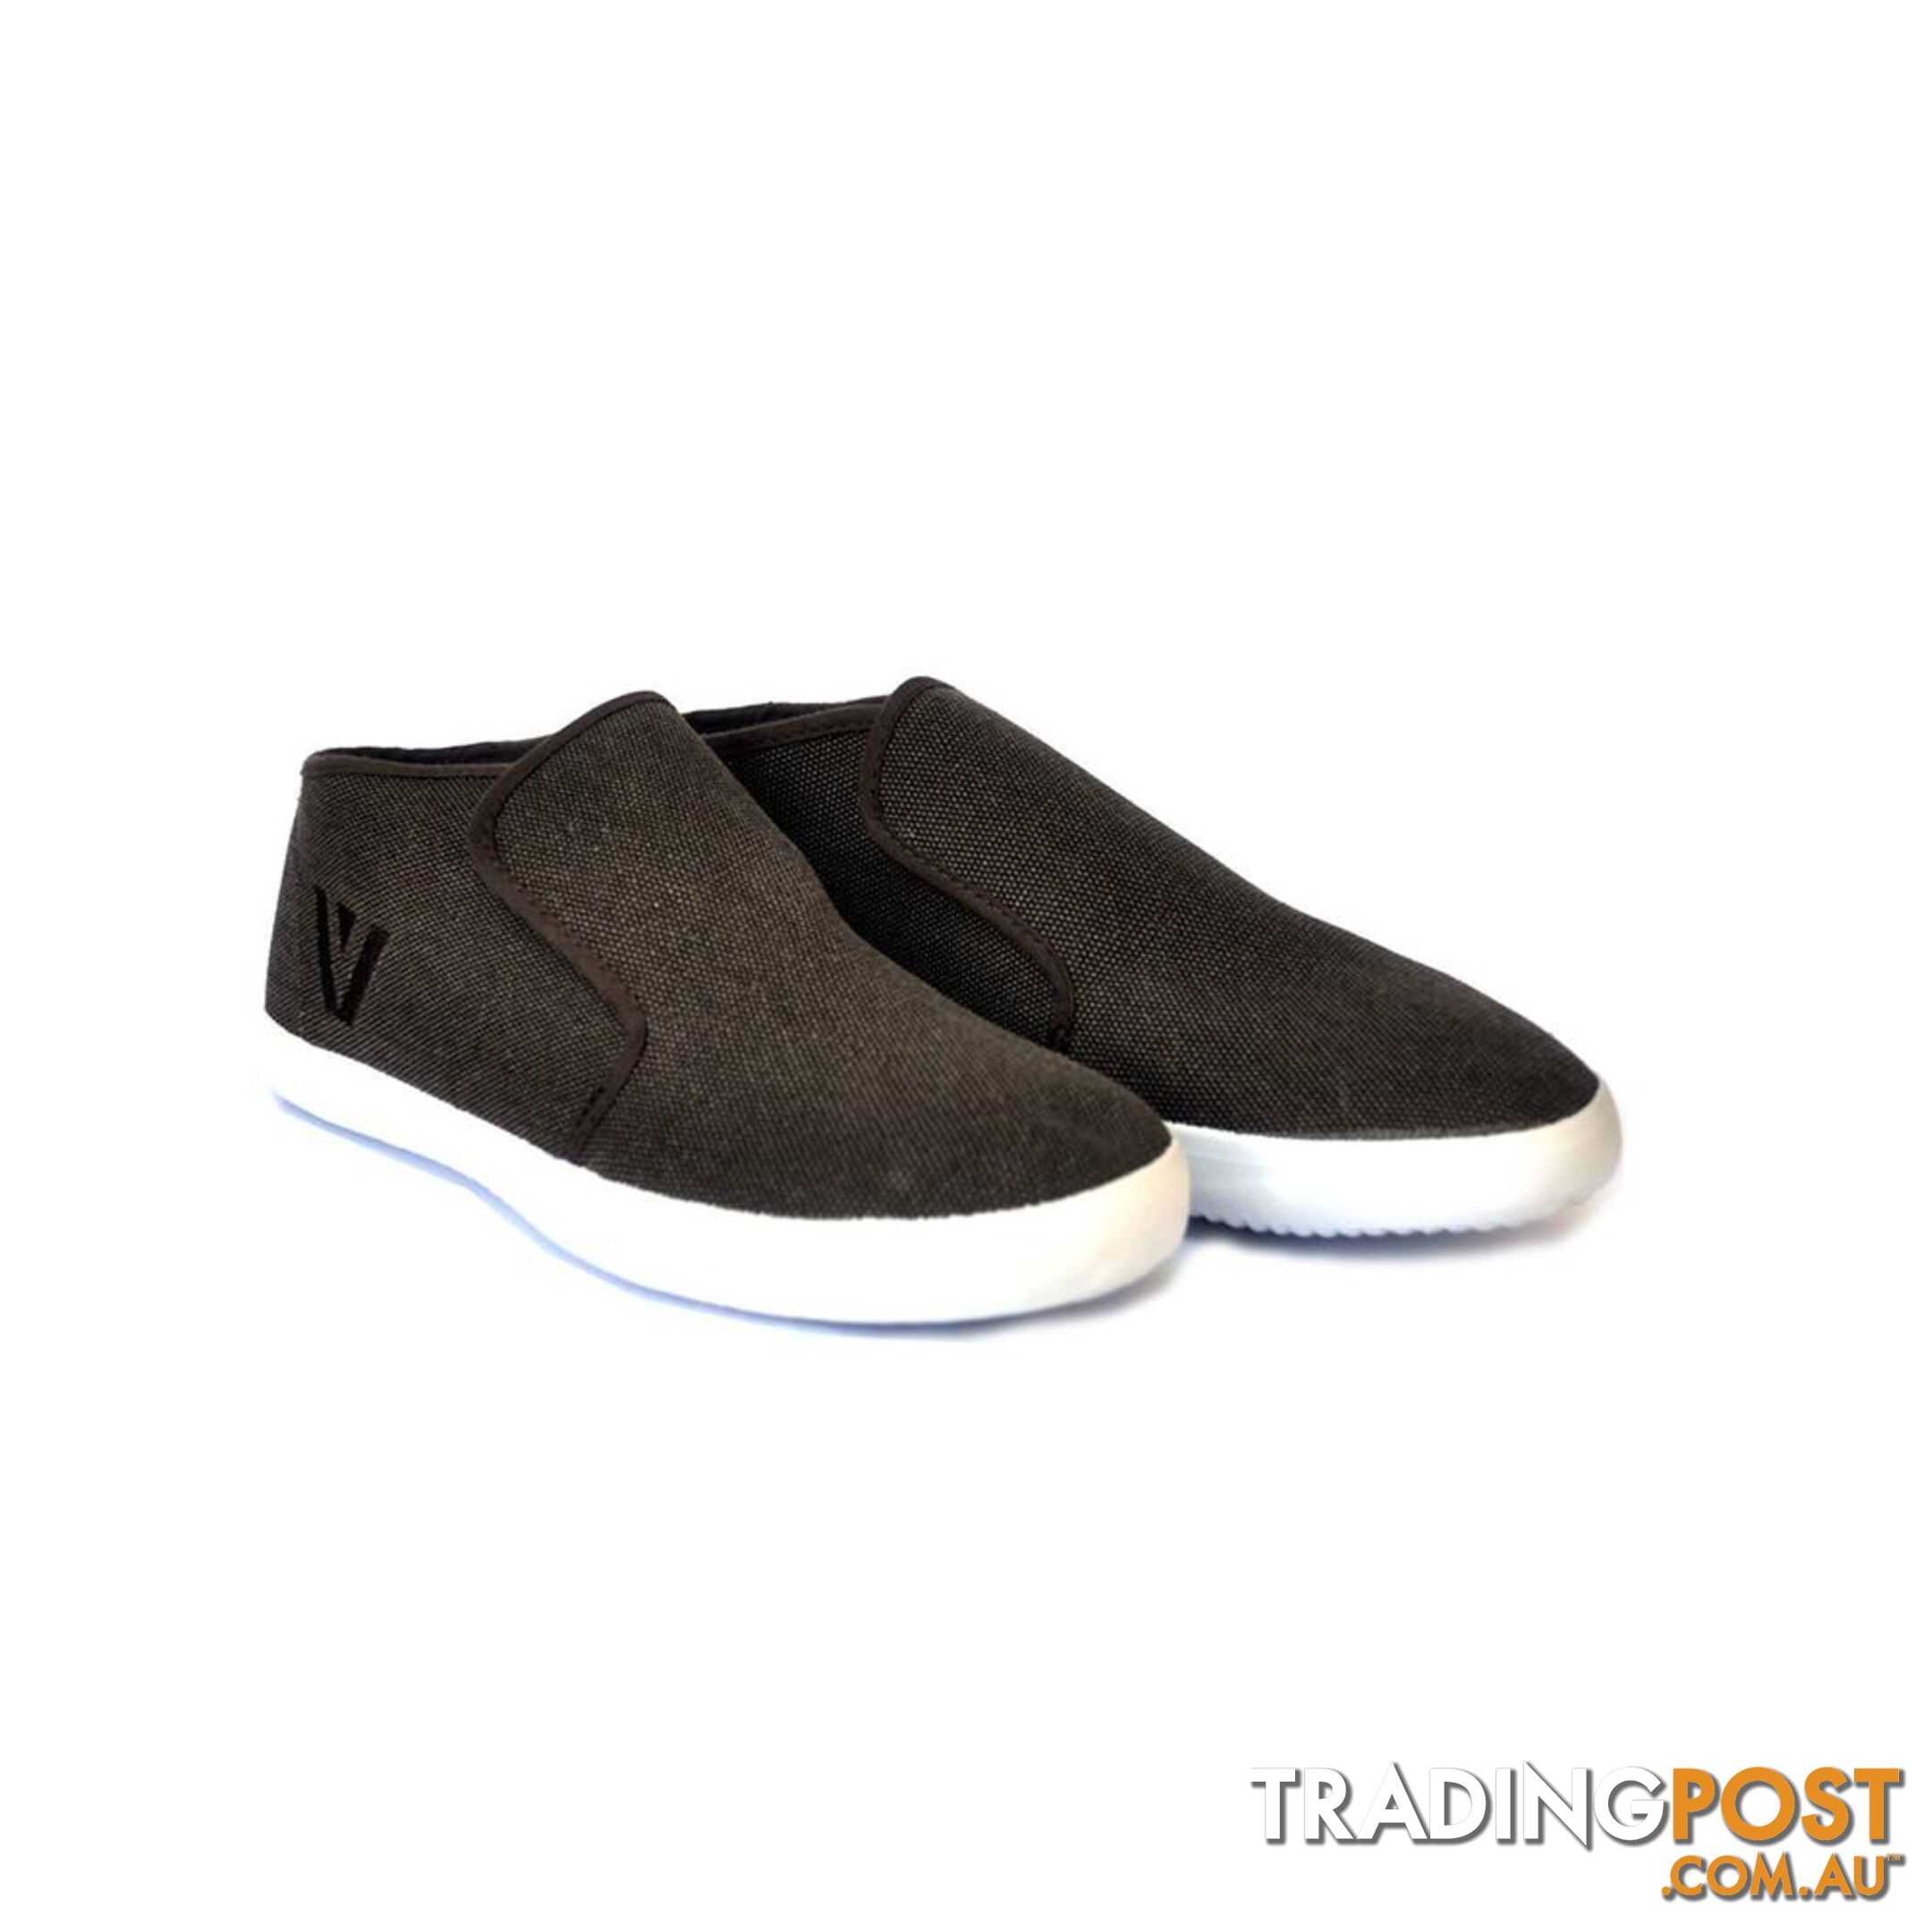 Soulier Caspian Canvas Slip On Sneakers Boots - Brown - Soulier - 4326500383761